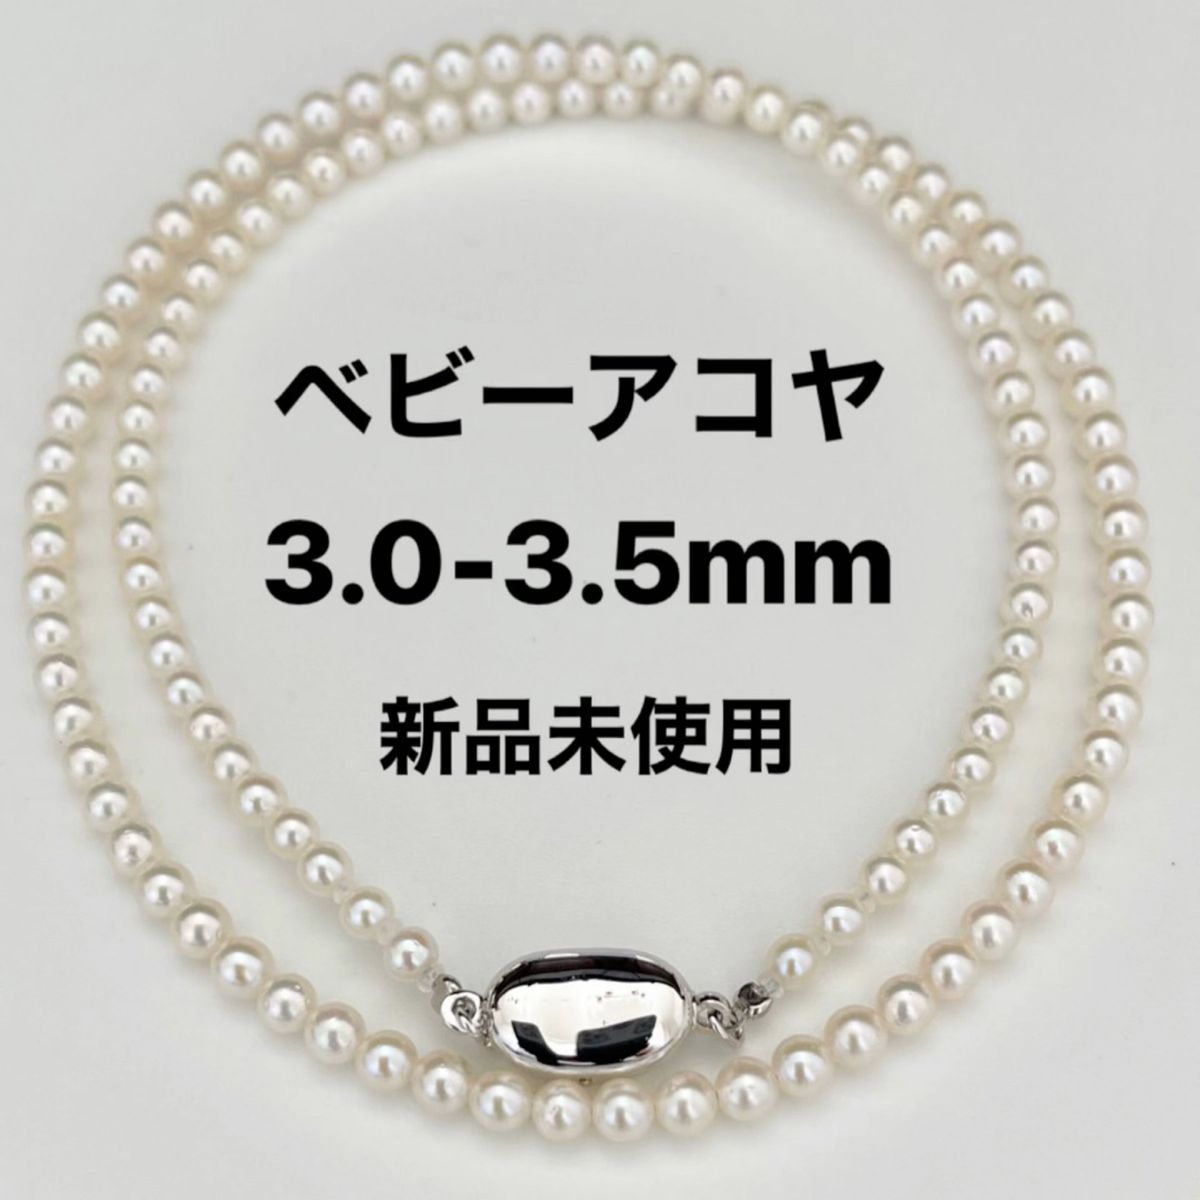 あこや真珠ネックレス3.0-3.5mmベビーパール新品